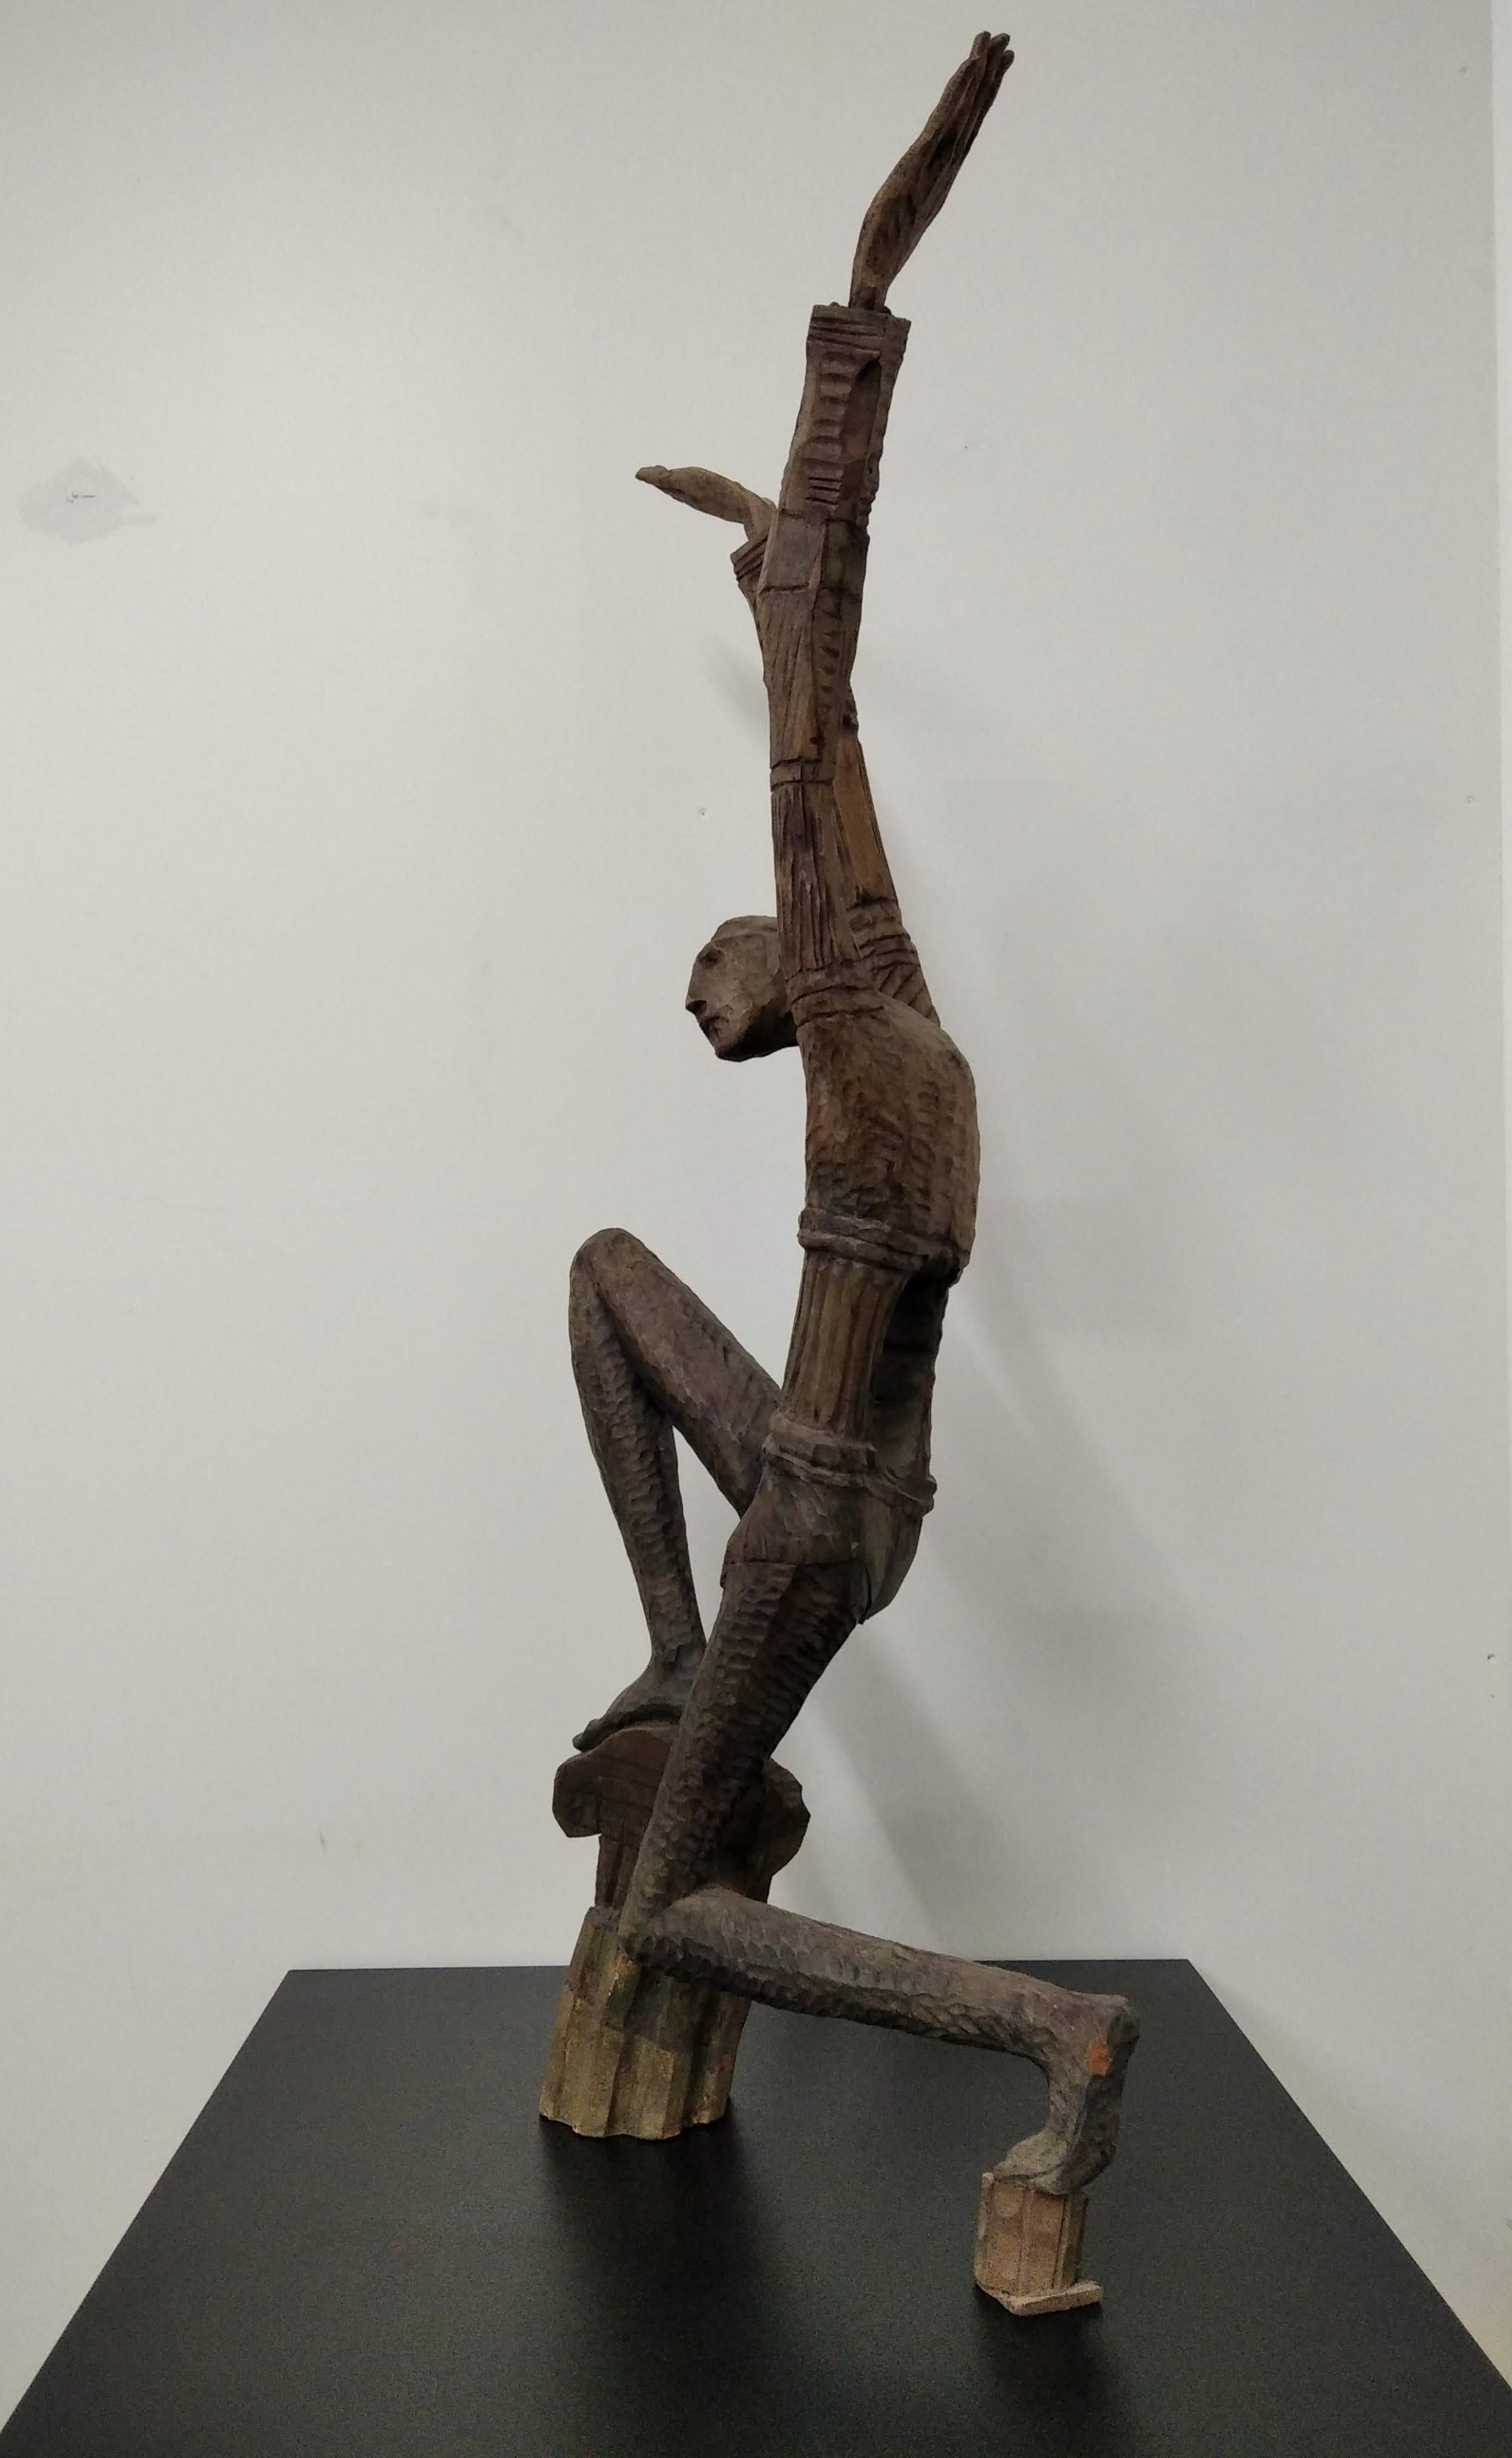 Sedente con manos arriba  - Sculpture by Segundo Gutiérrez